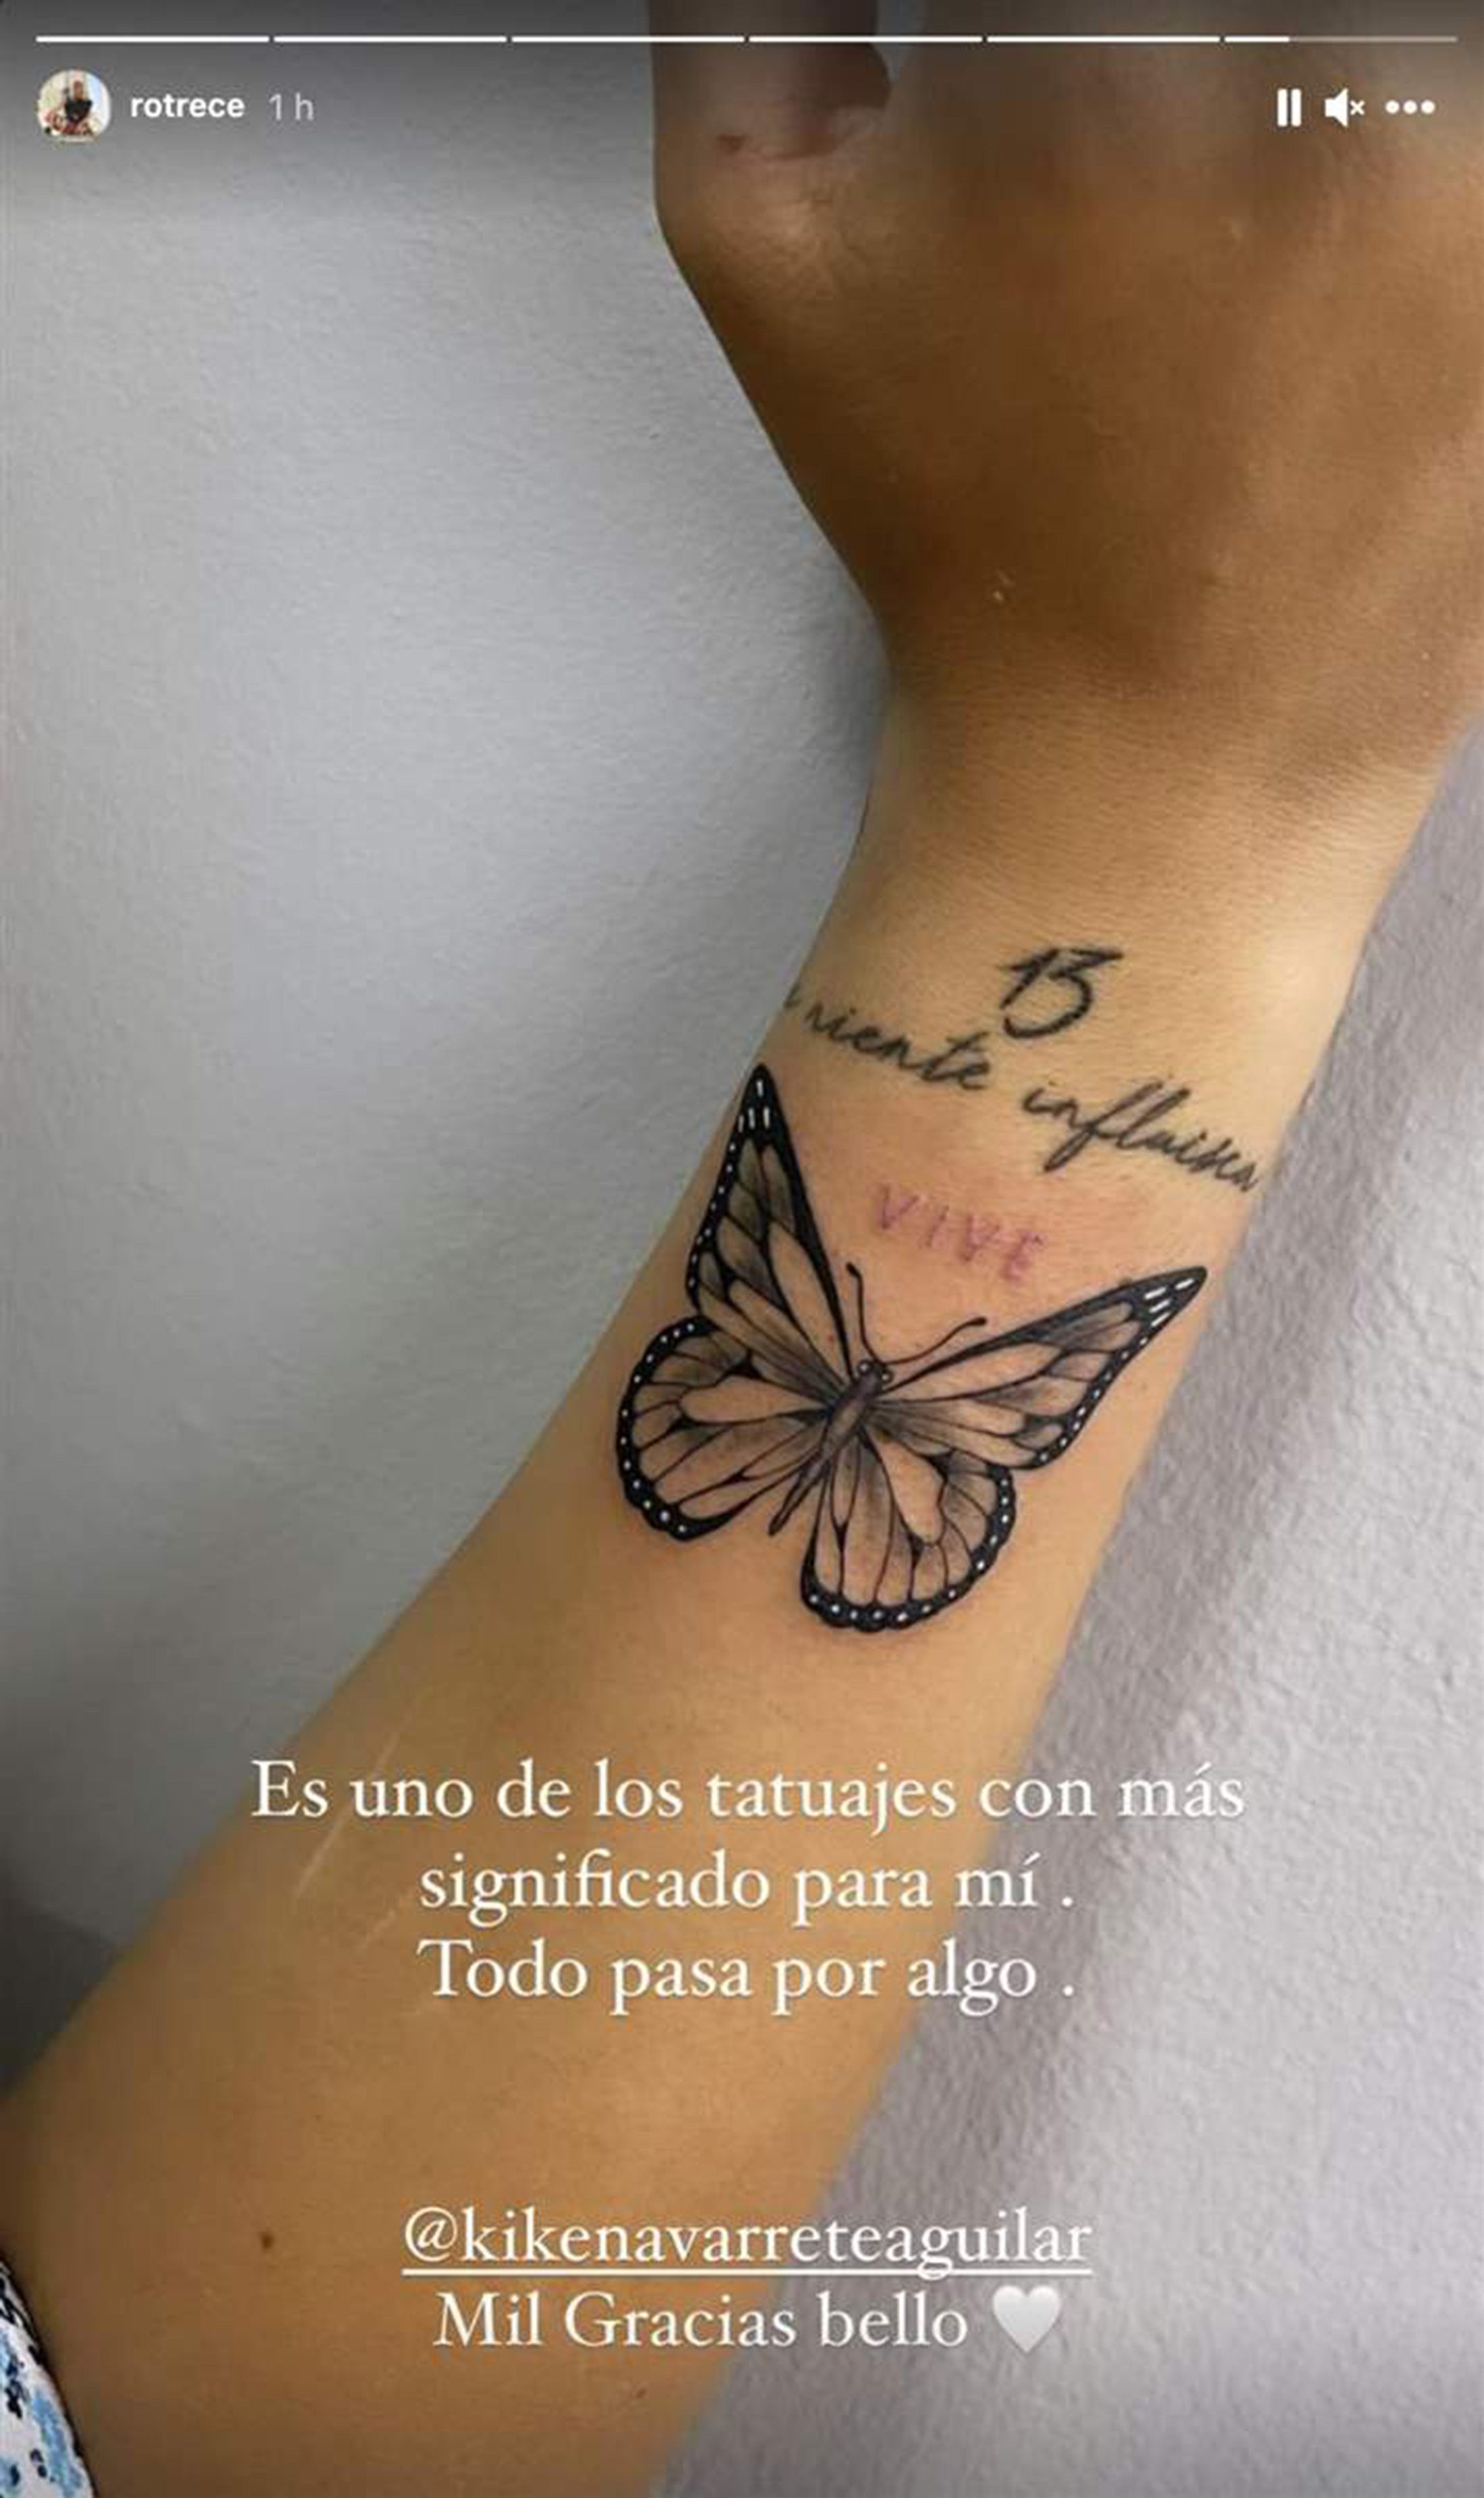 Rocío Flores estrena tatuaje cargado de significado